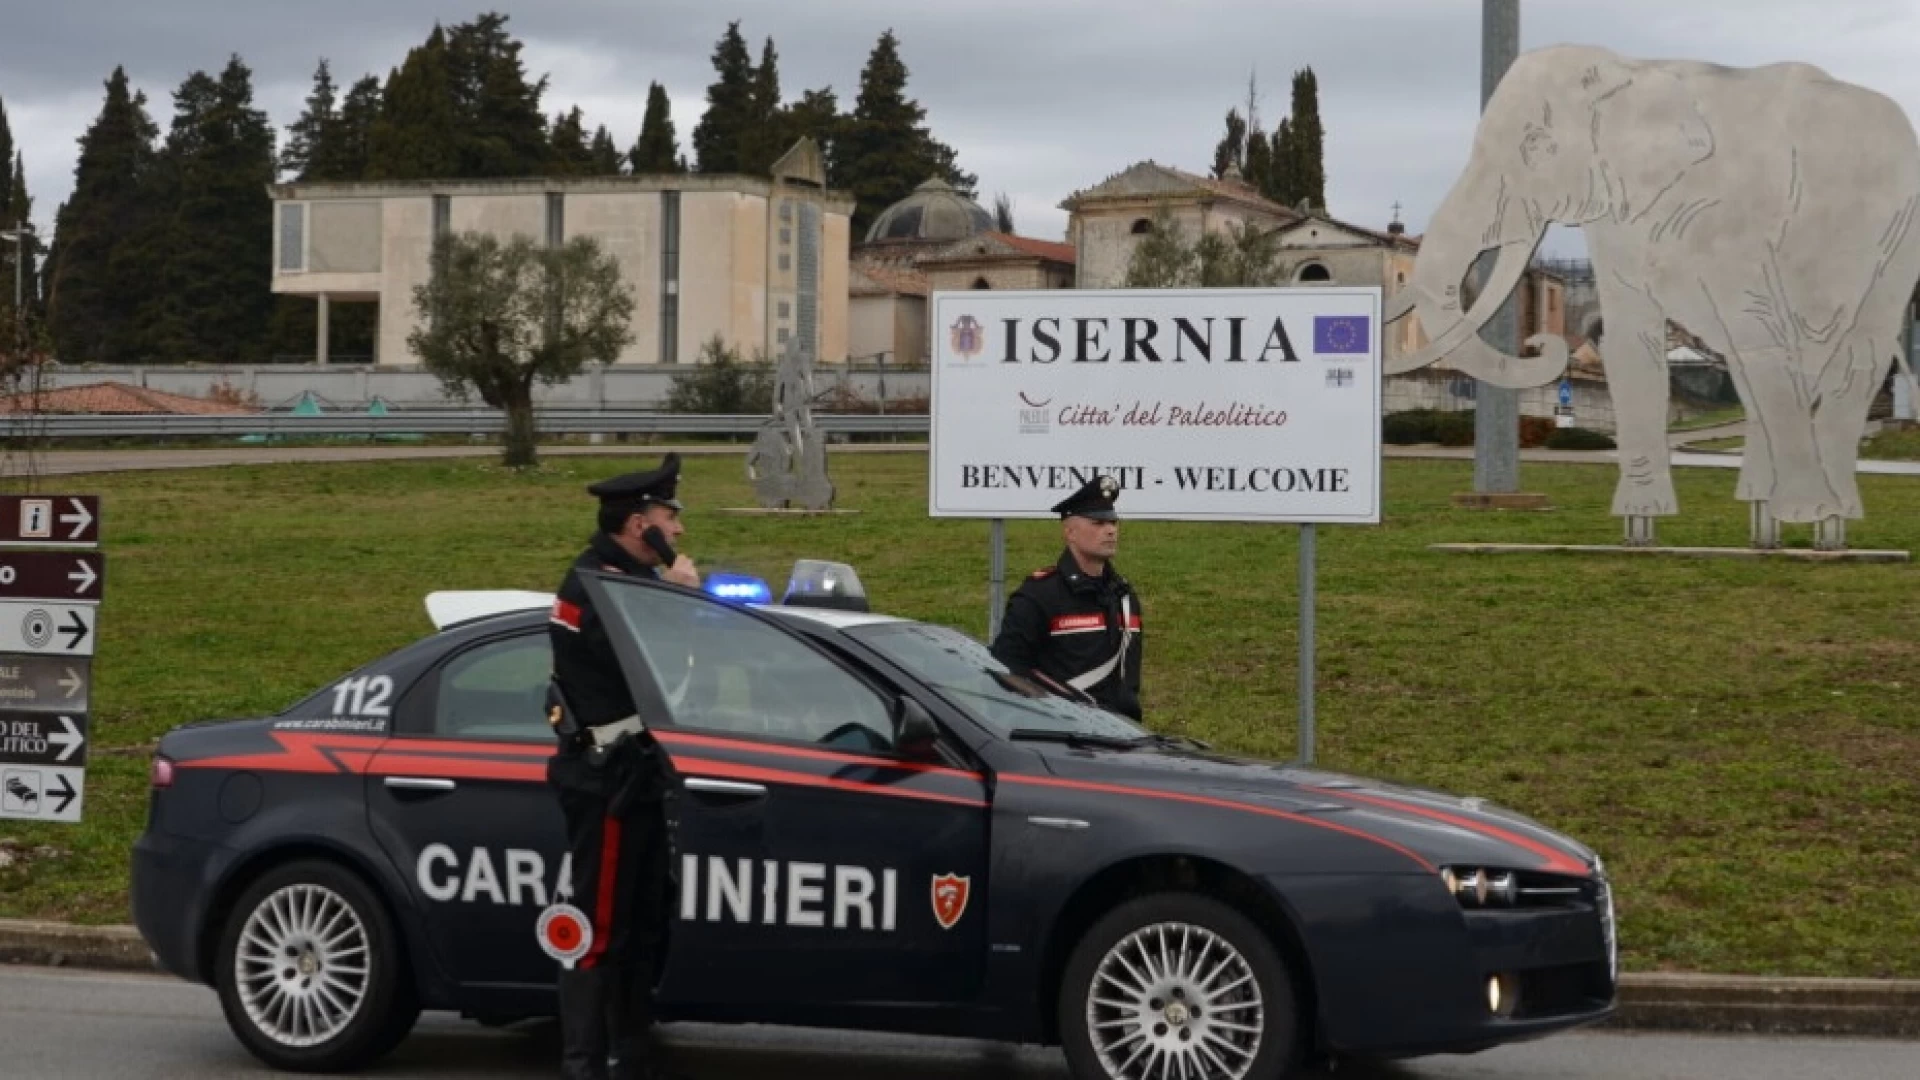 Pasqua Sicura: i Carabinieri hanno sorvegliato il territorio. Numerose denunce e sequestri. Presidiate le arterie stradali.